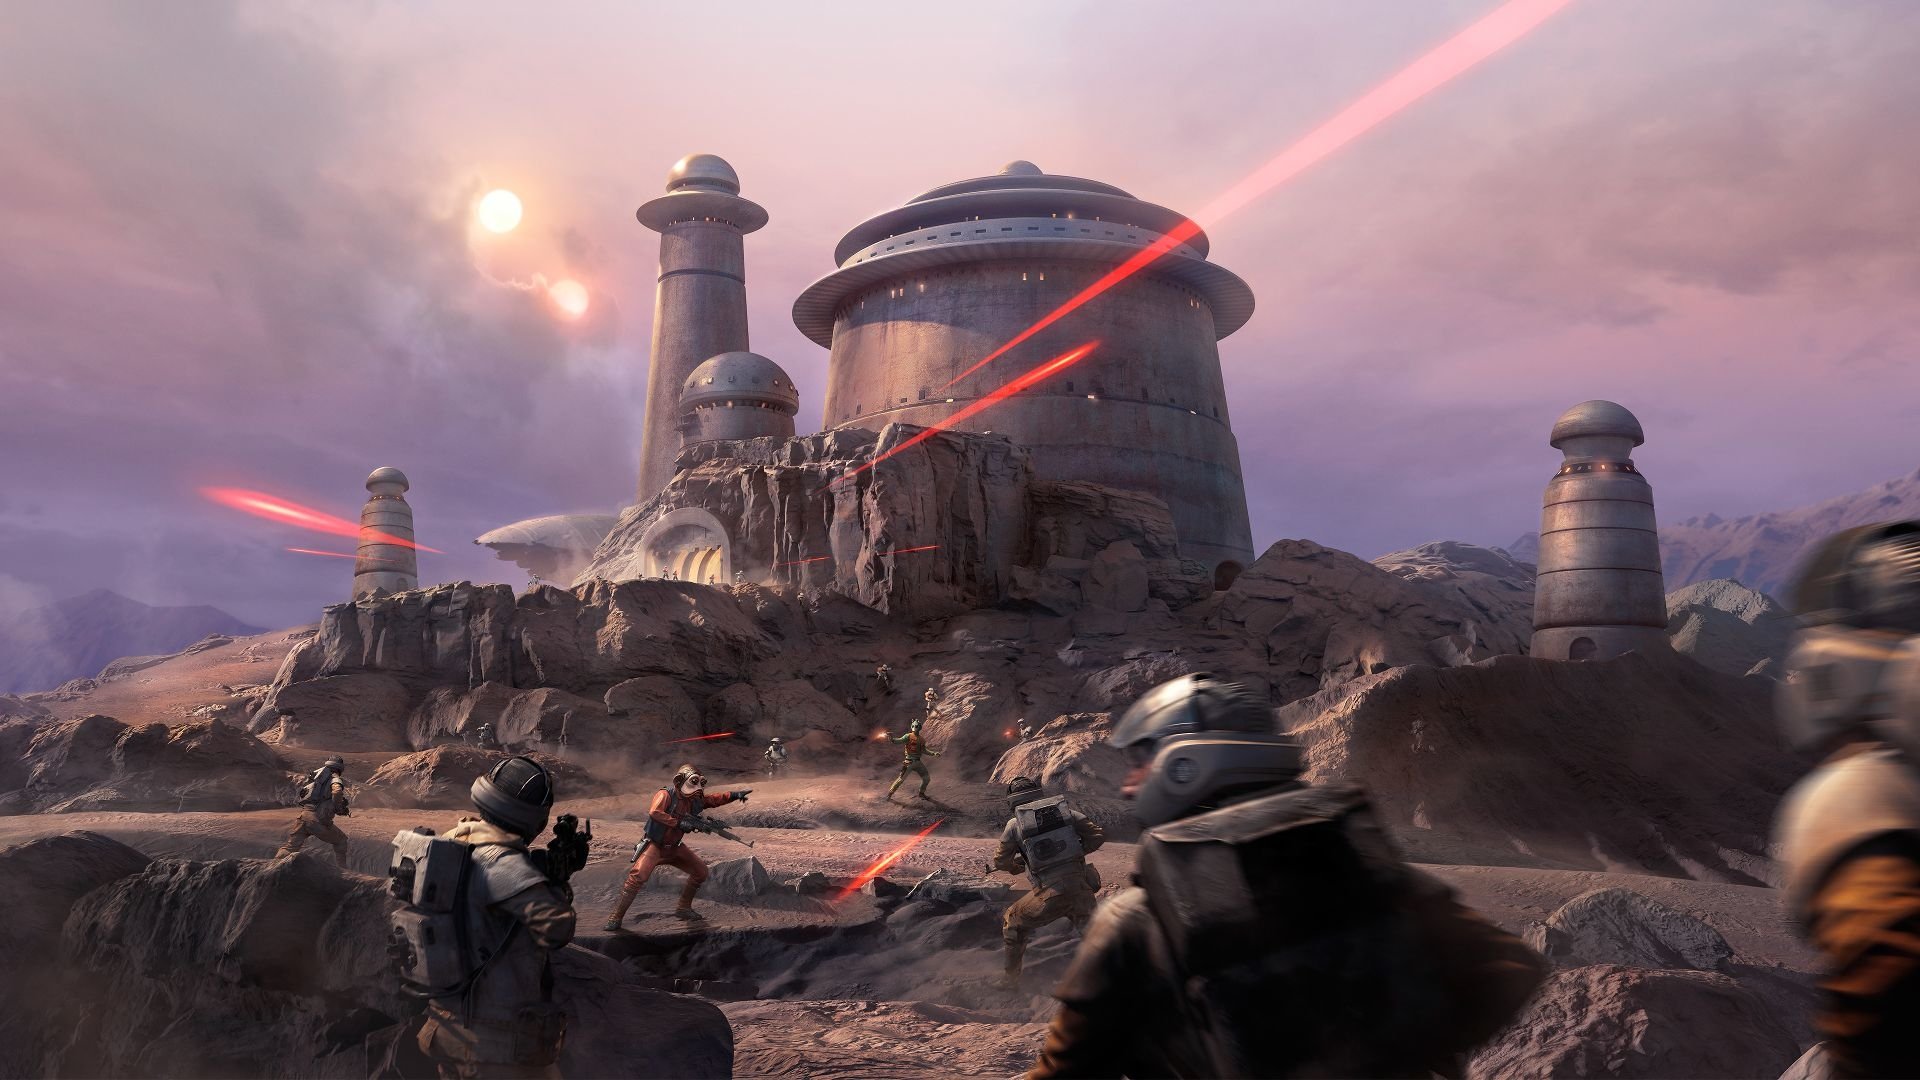 Star Wars Battlefront HD Wallpaper Background Image